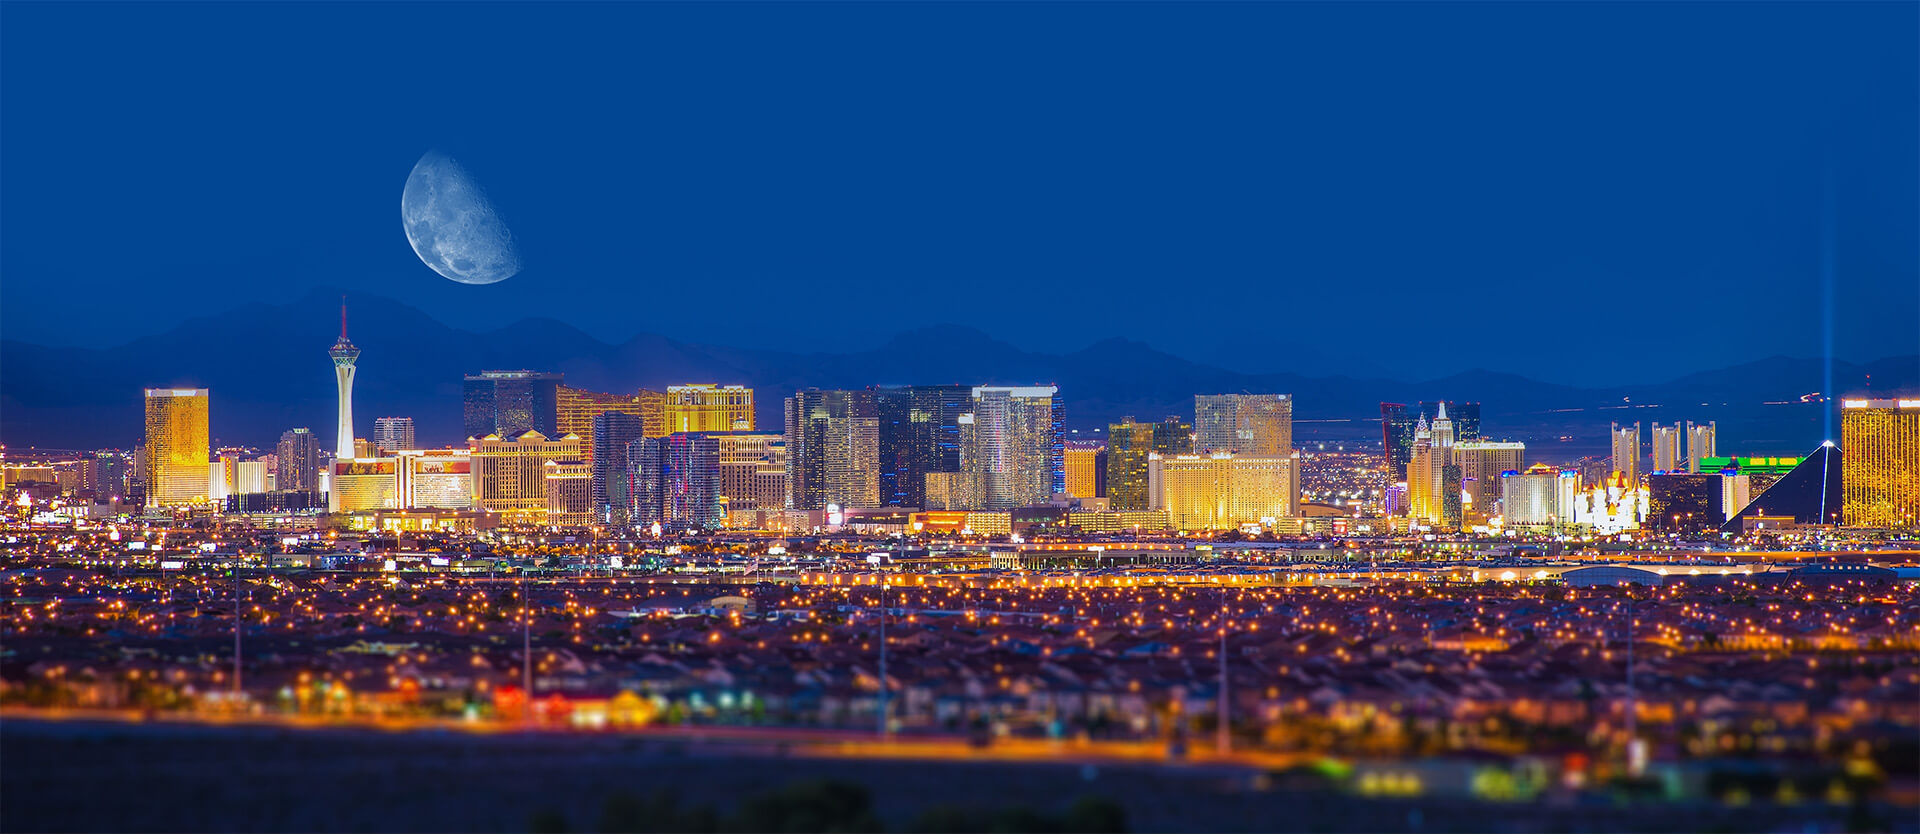 Las Vegas city view at night